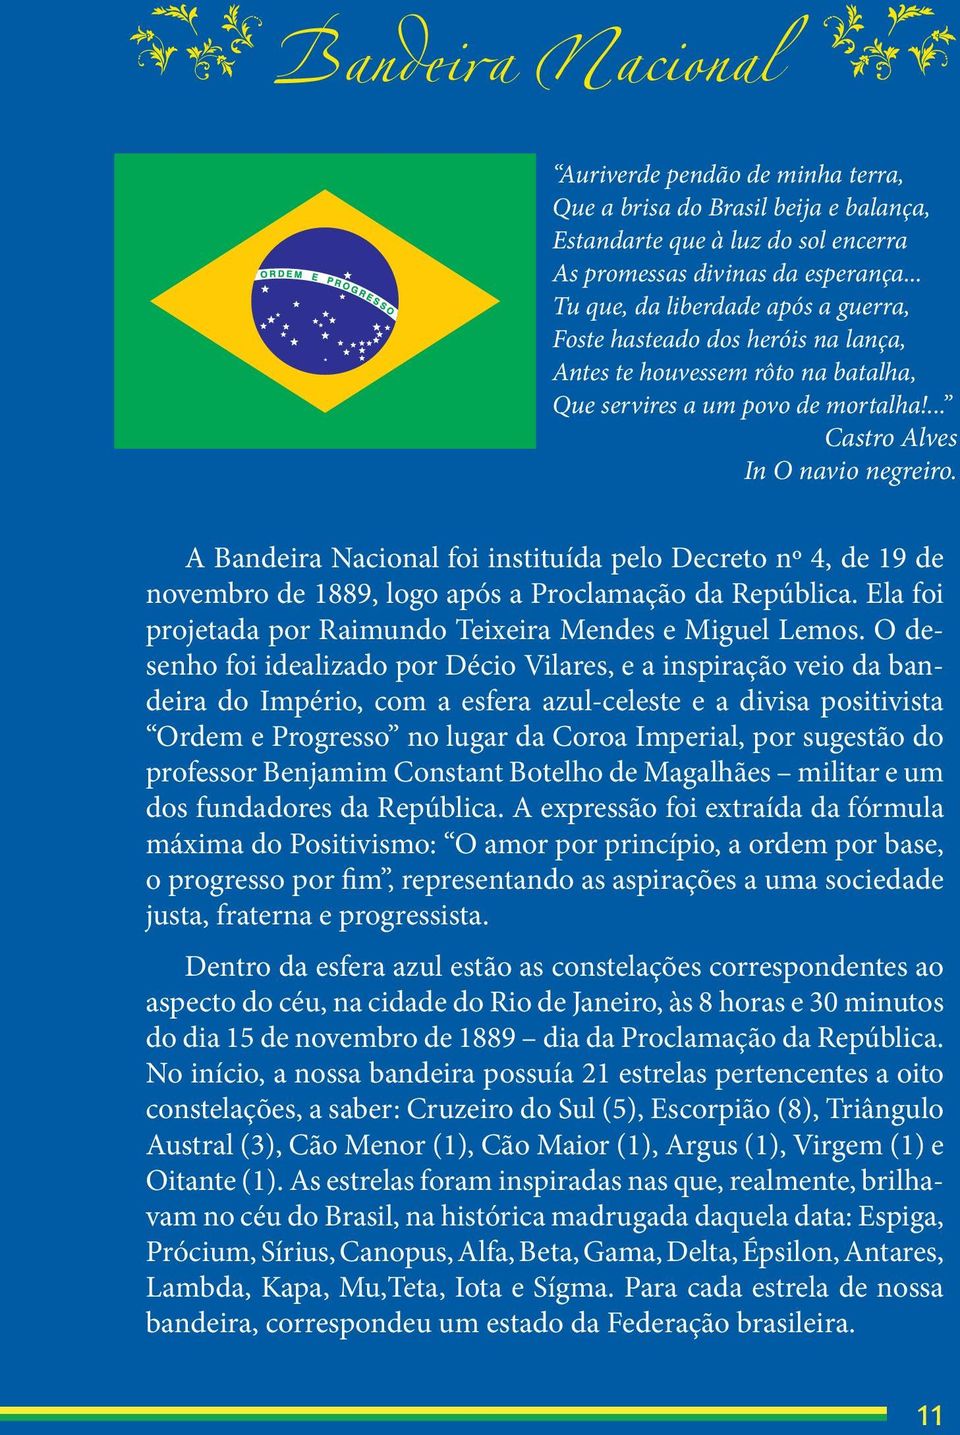 uhino Nacional Brasileiro A Bandeira Nacional foi instituída pelo Decreto nº 4, de 19 de novembro de 1889, logo após a Proclamação da República.